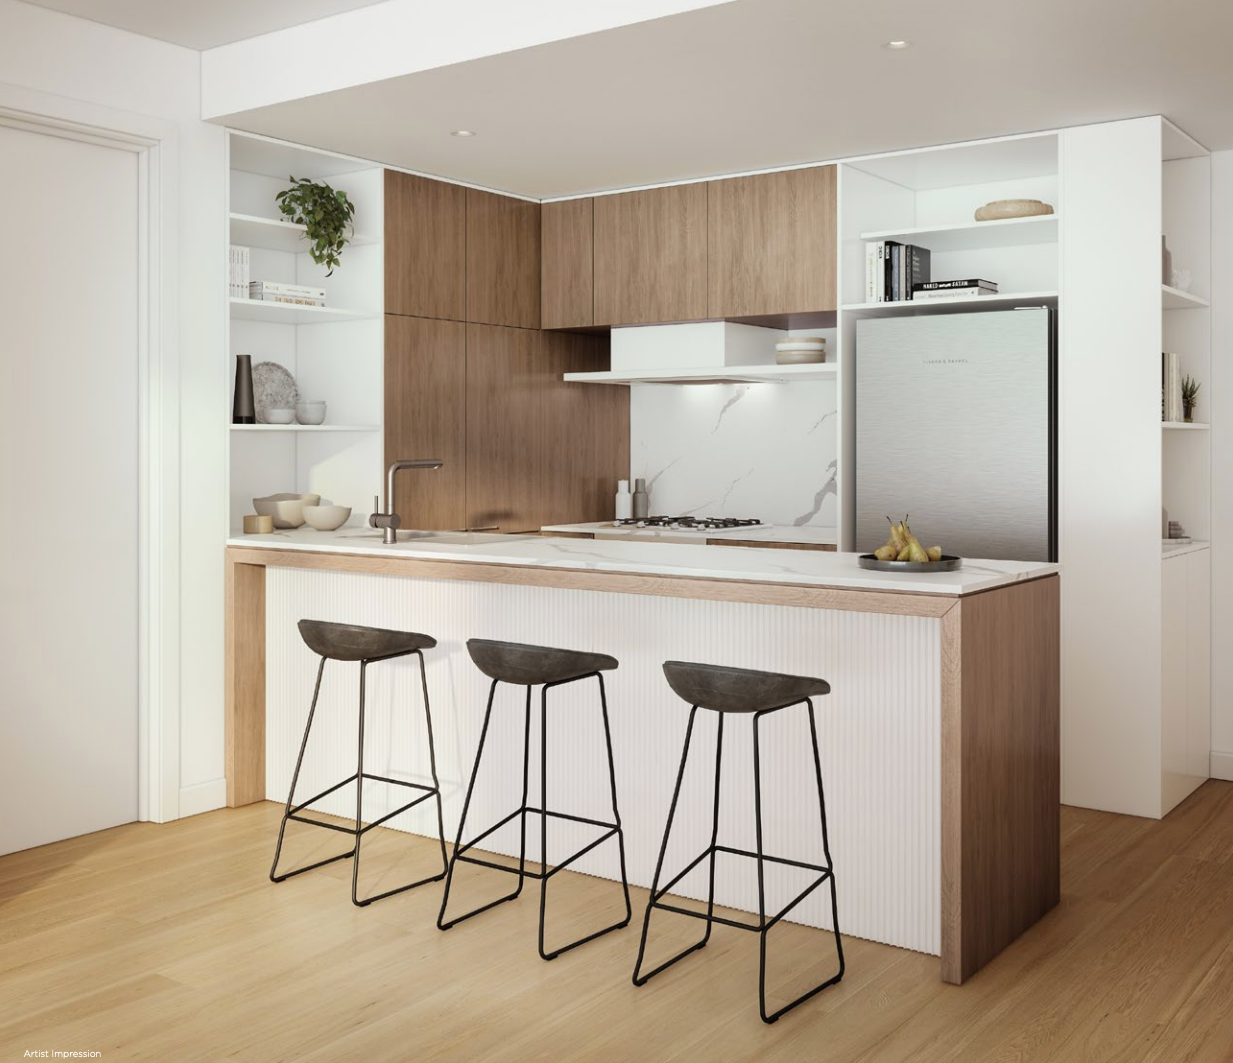 Linden - Samma Place's kitchen design.